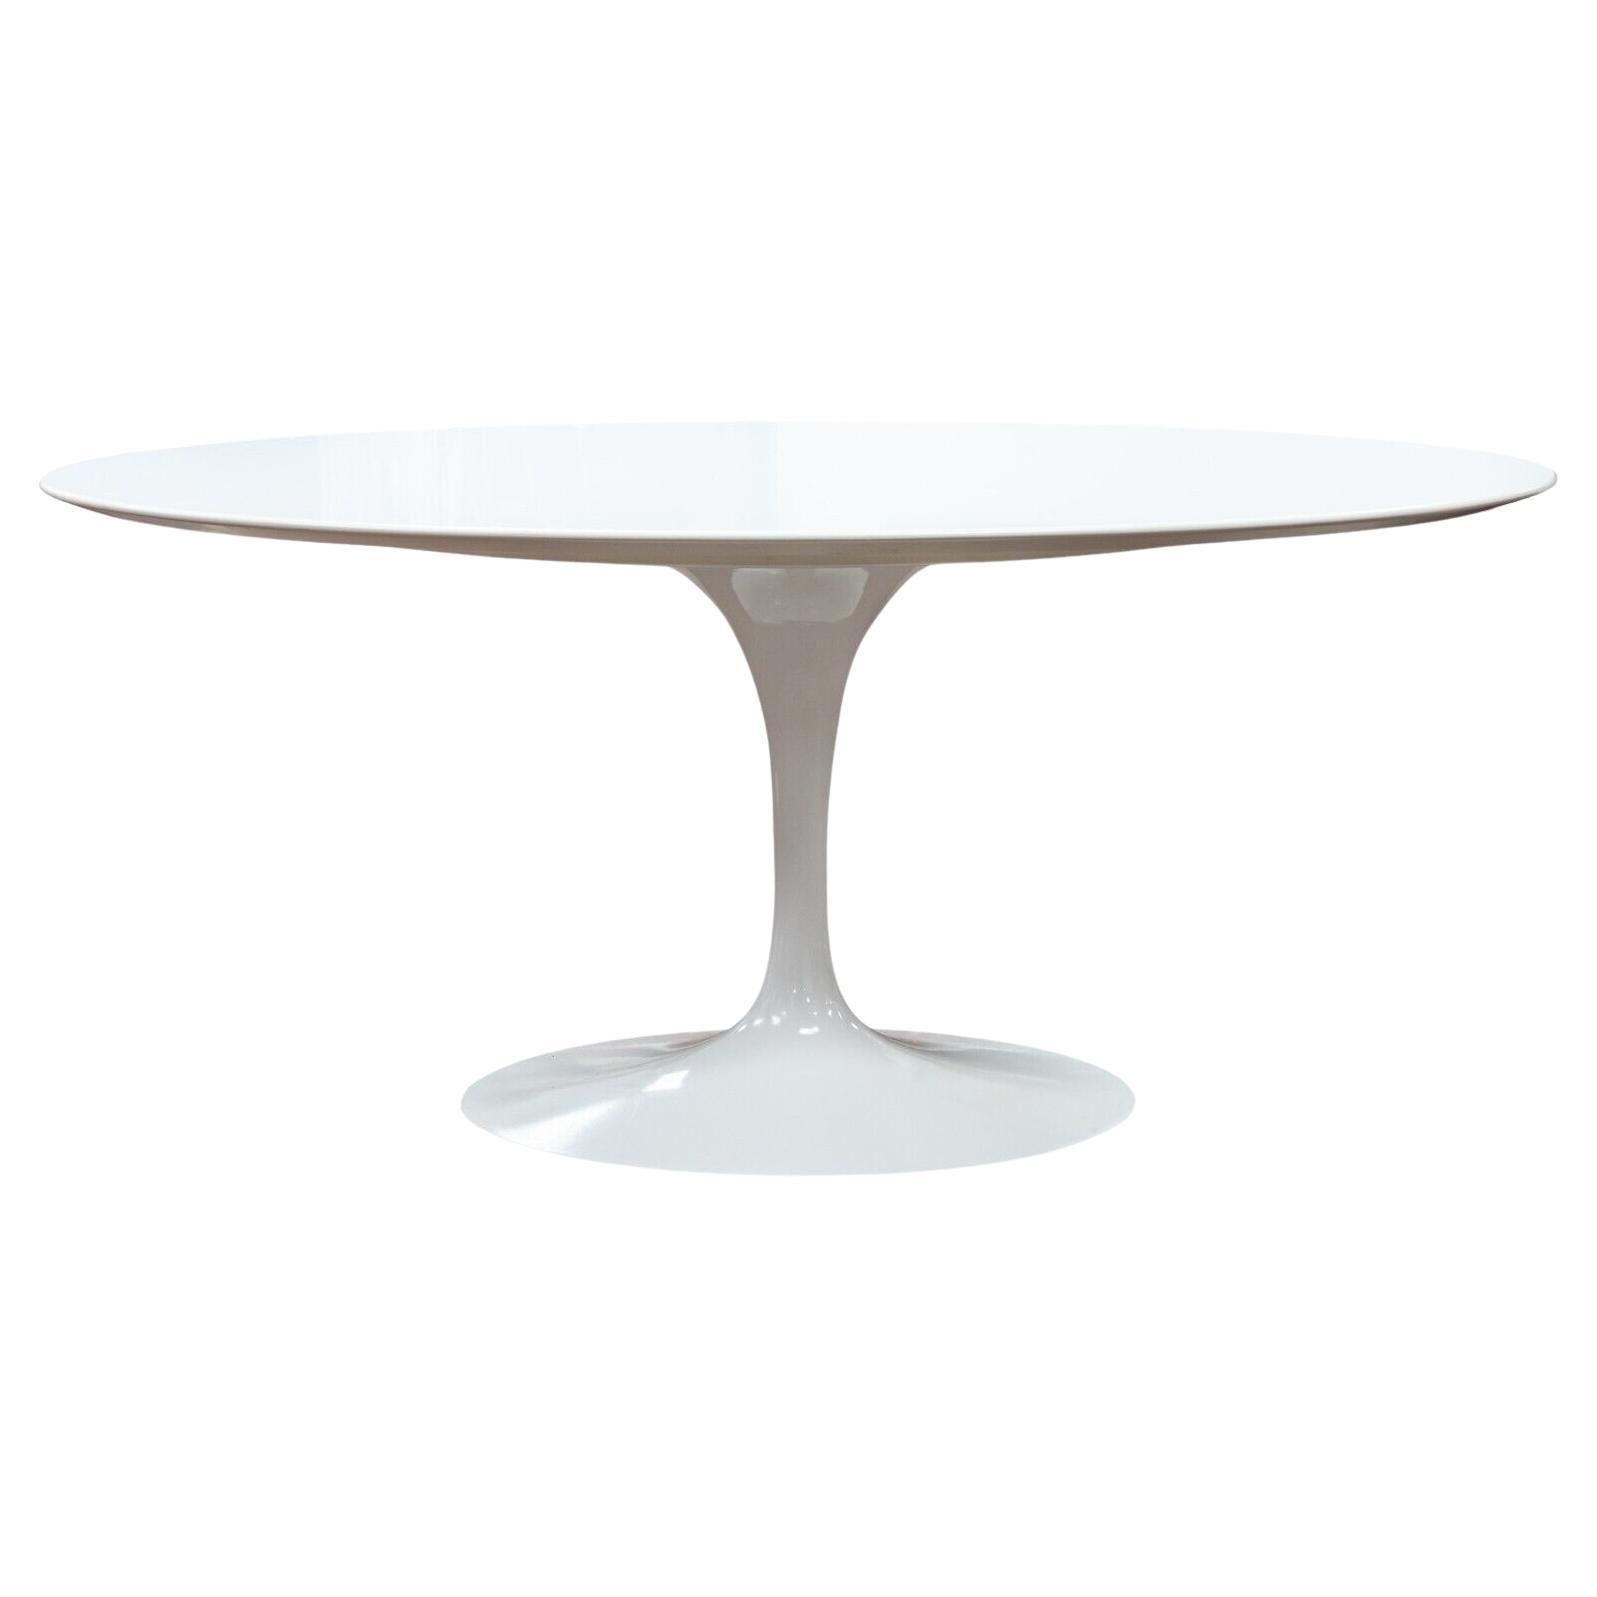 Knoll Saarinen Mid Century Modern White Oval Tulip Dining Table